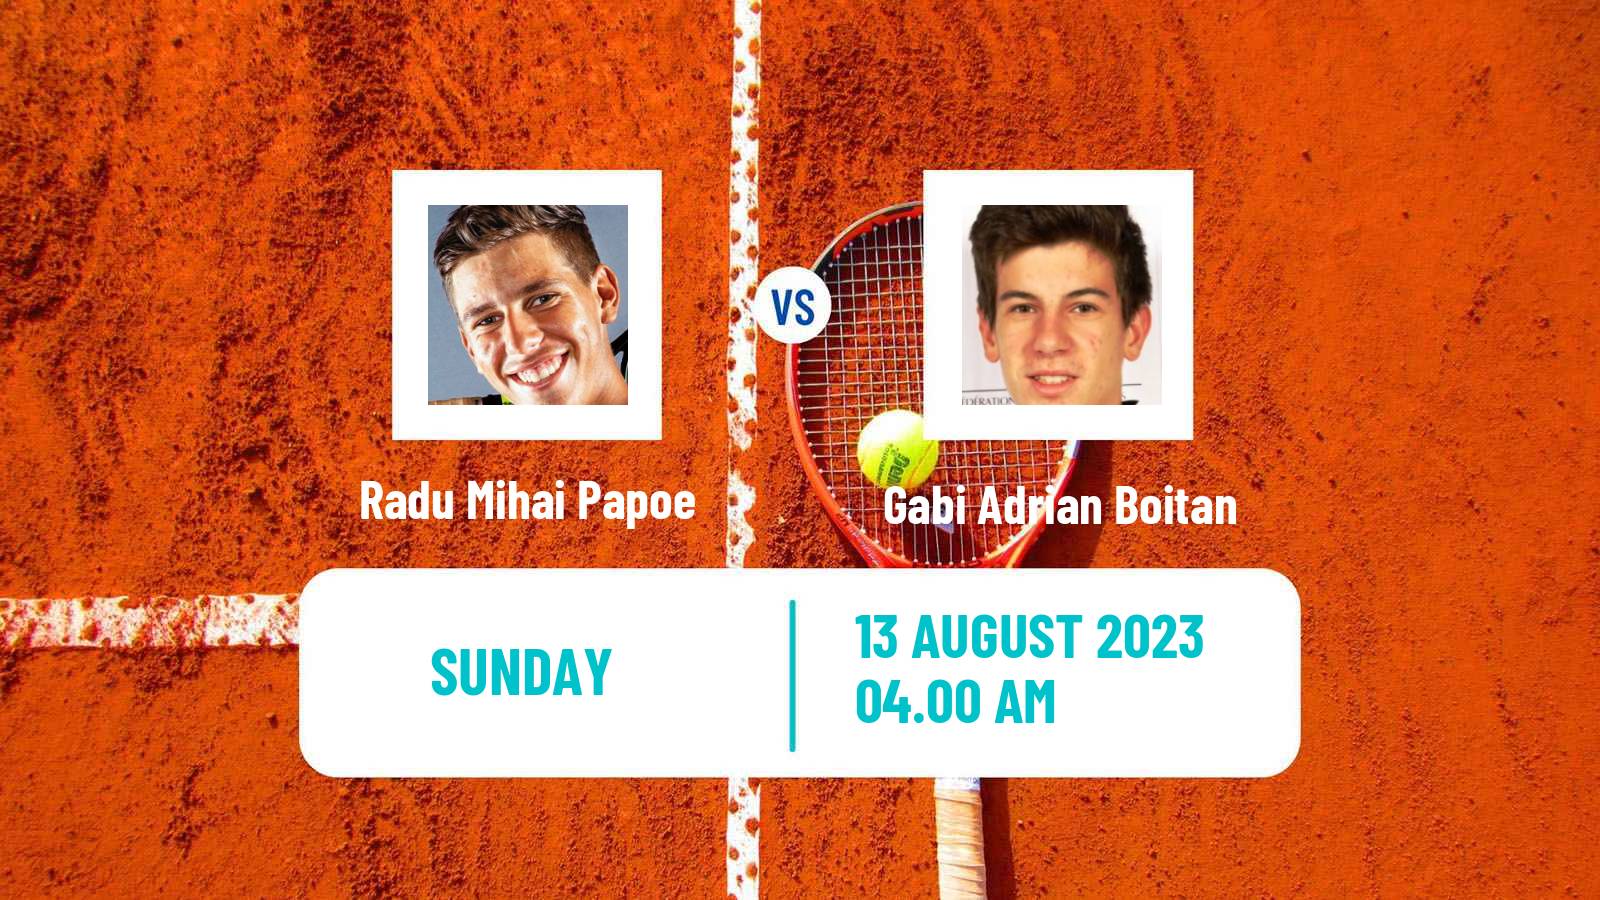 Tennis ITF M15 Curtea De Arges Men Radu Mihai Papoe - Gabi Adrian Boitan